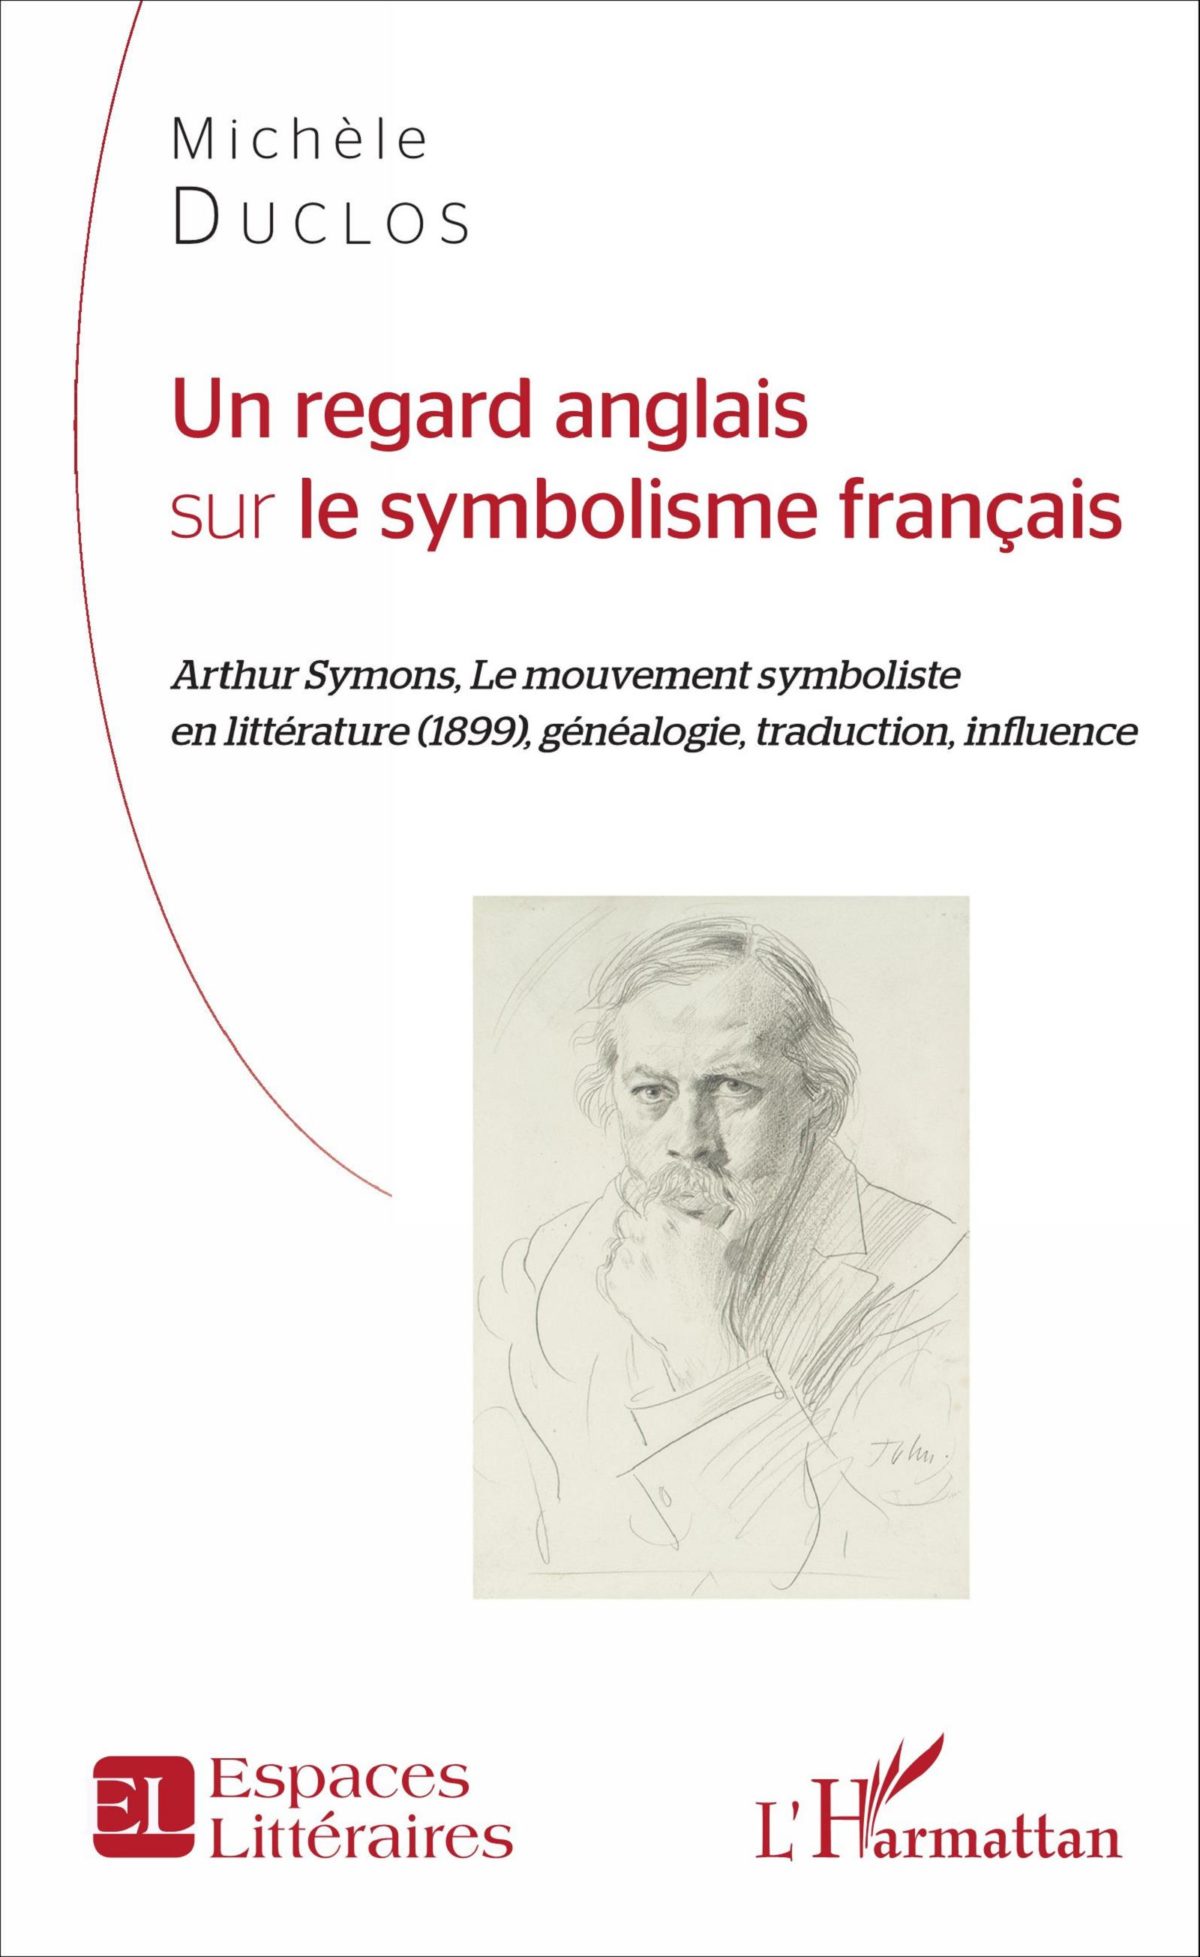 Michèle Duclos, Un regard anglais sur le symbolisme français, (L’Harmattan, 2016, 265 pages, 27 €).